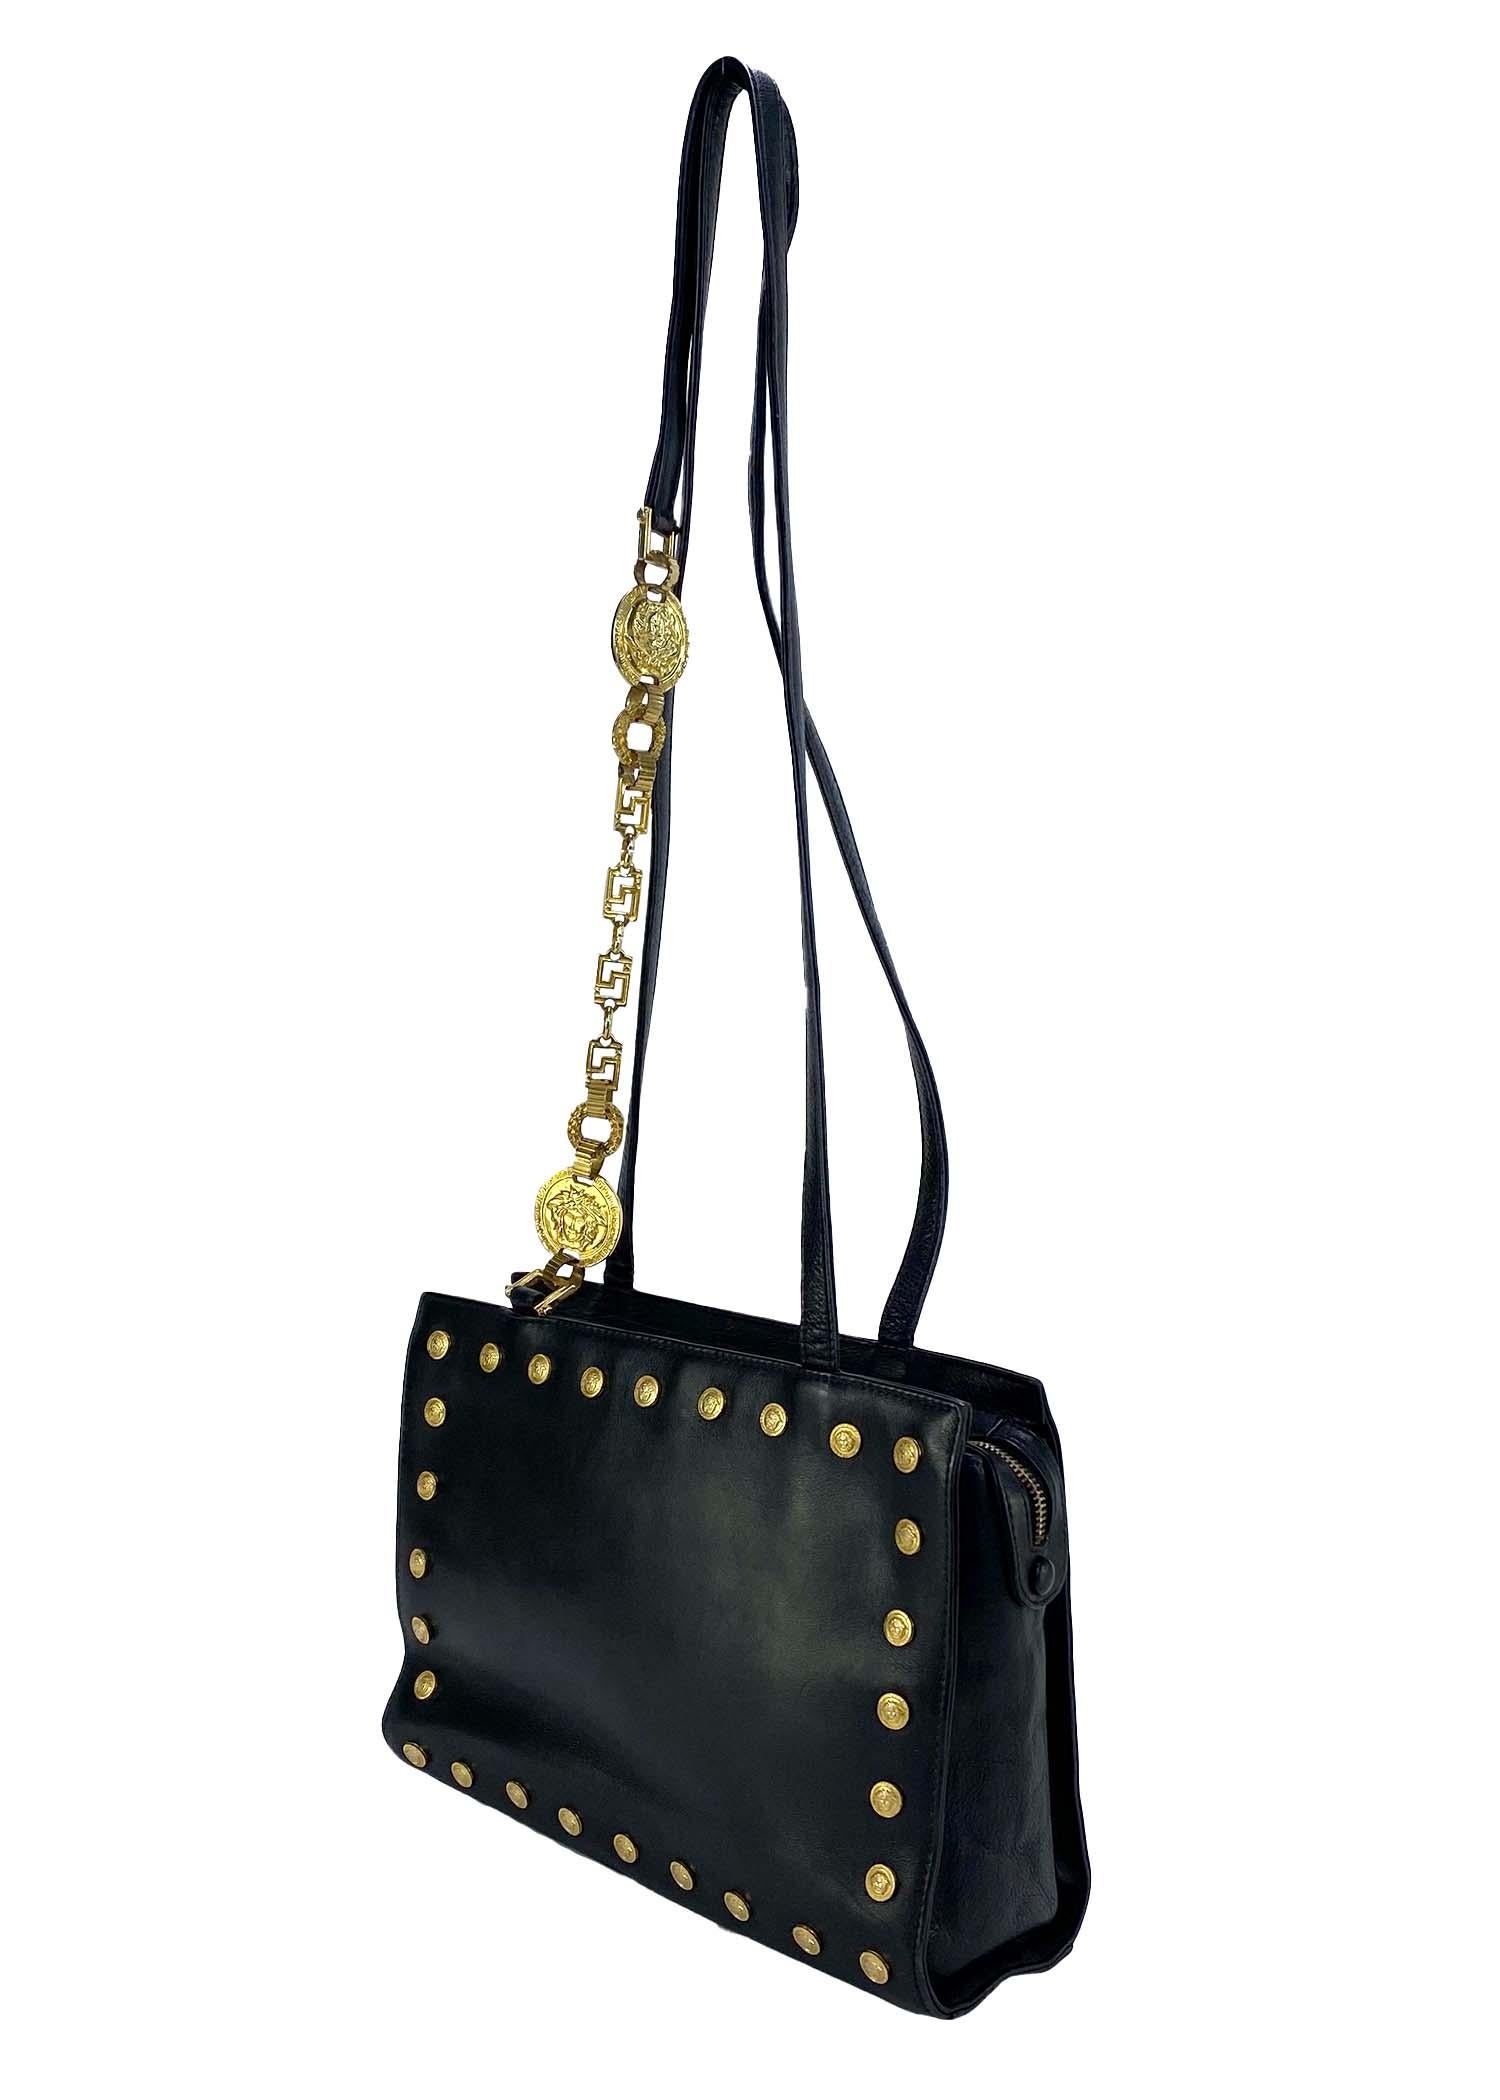 Wir präsentieren eine klassische Gianni Versace Couture-Handtasche, entworfen von Gianni Versace. Die Anfang/Mitte der 1990er Jahre entworfene Tasche ist komplett aus schwarzem Leder gefertigt und mit einem Rand aus kleinen Medusa-Logo-Medaillons